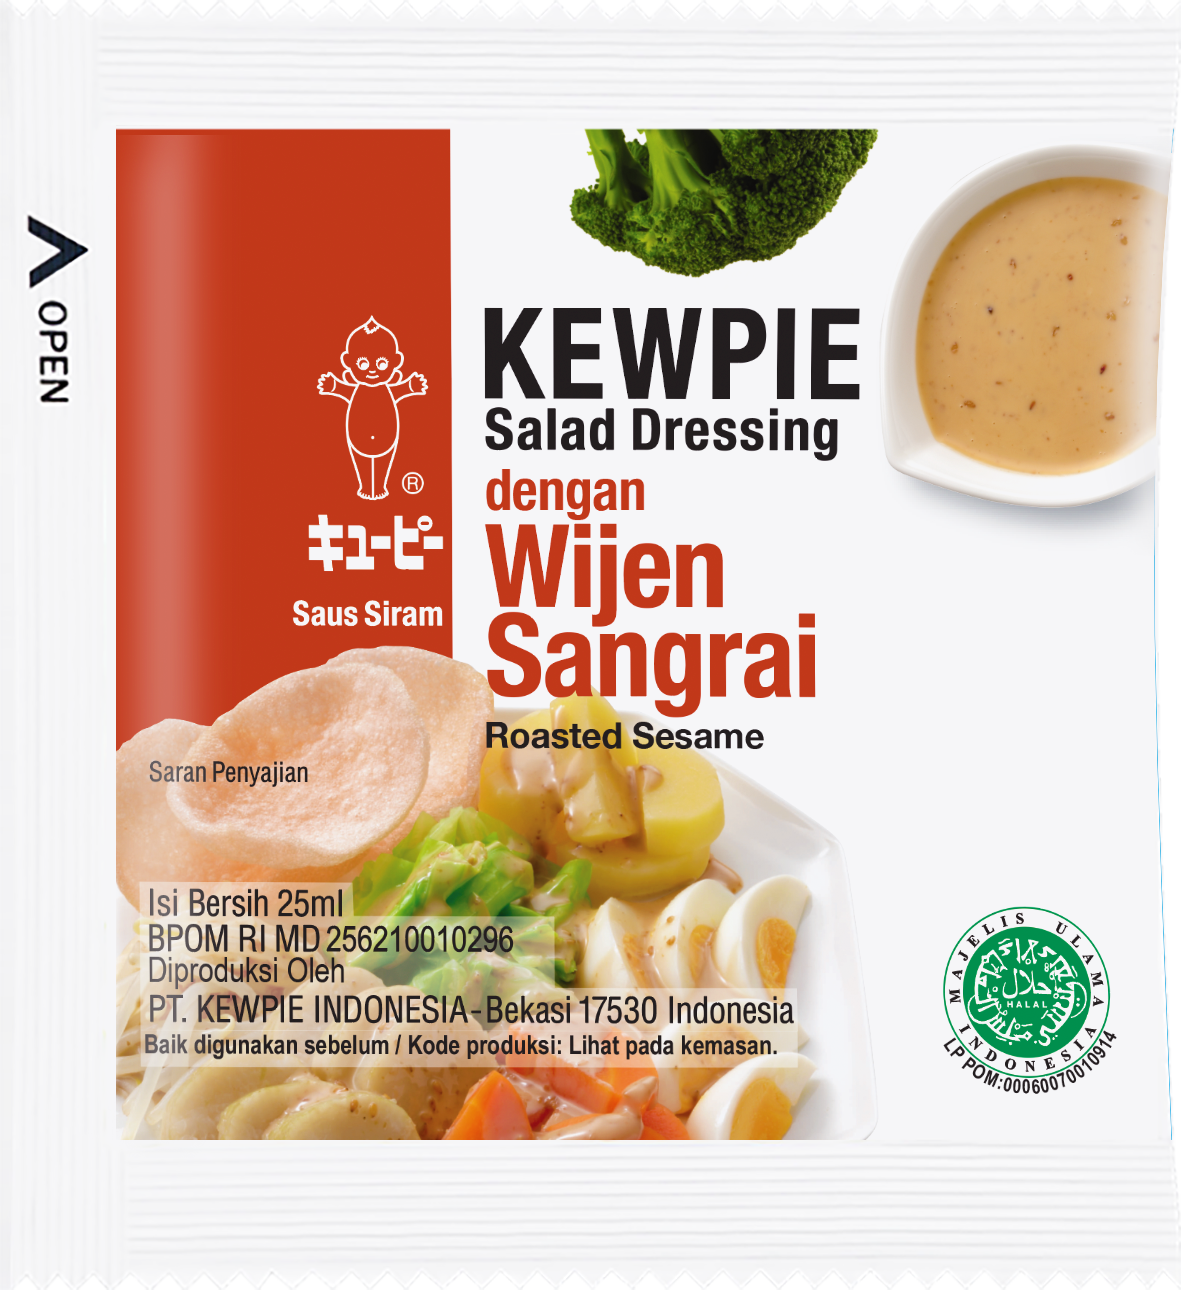 Kewpie salad dressing